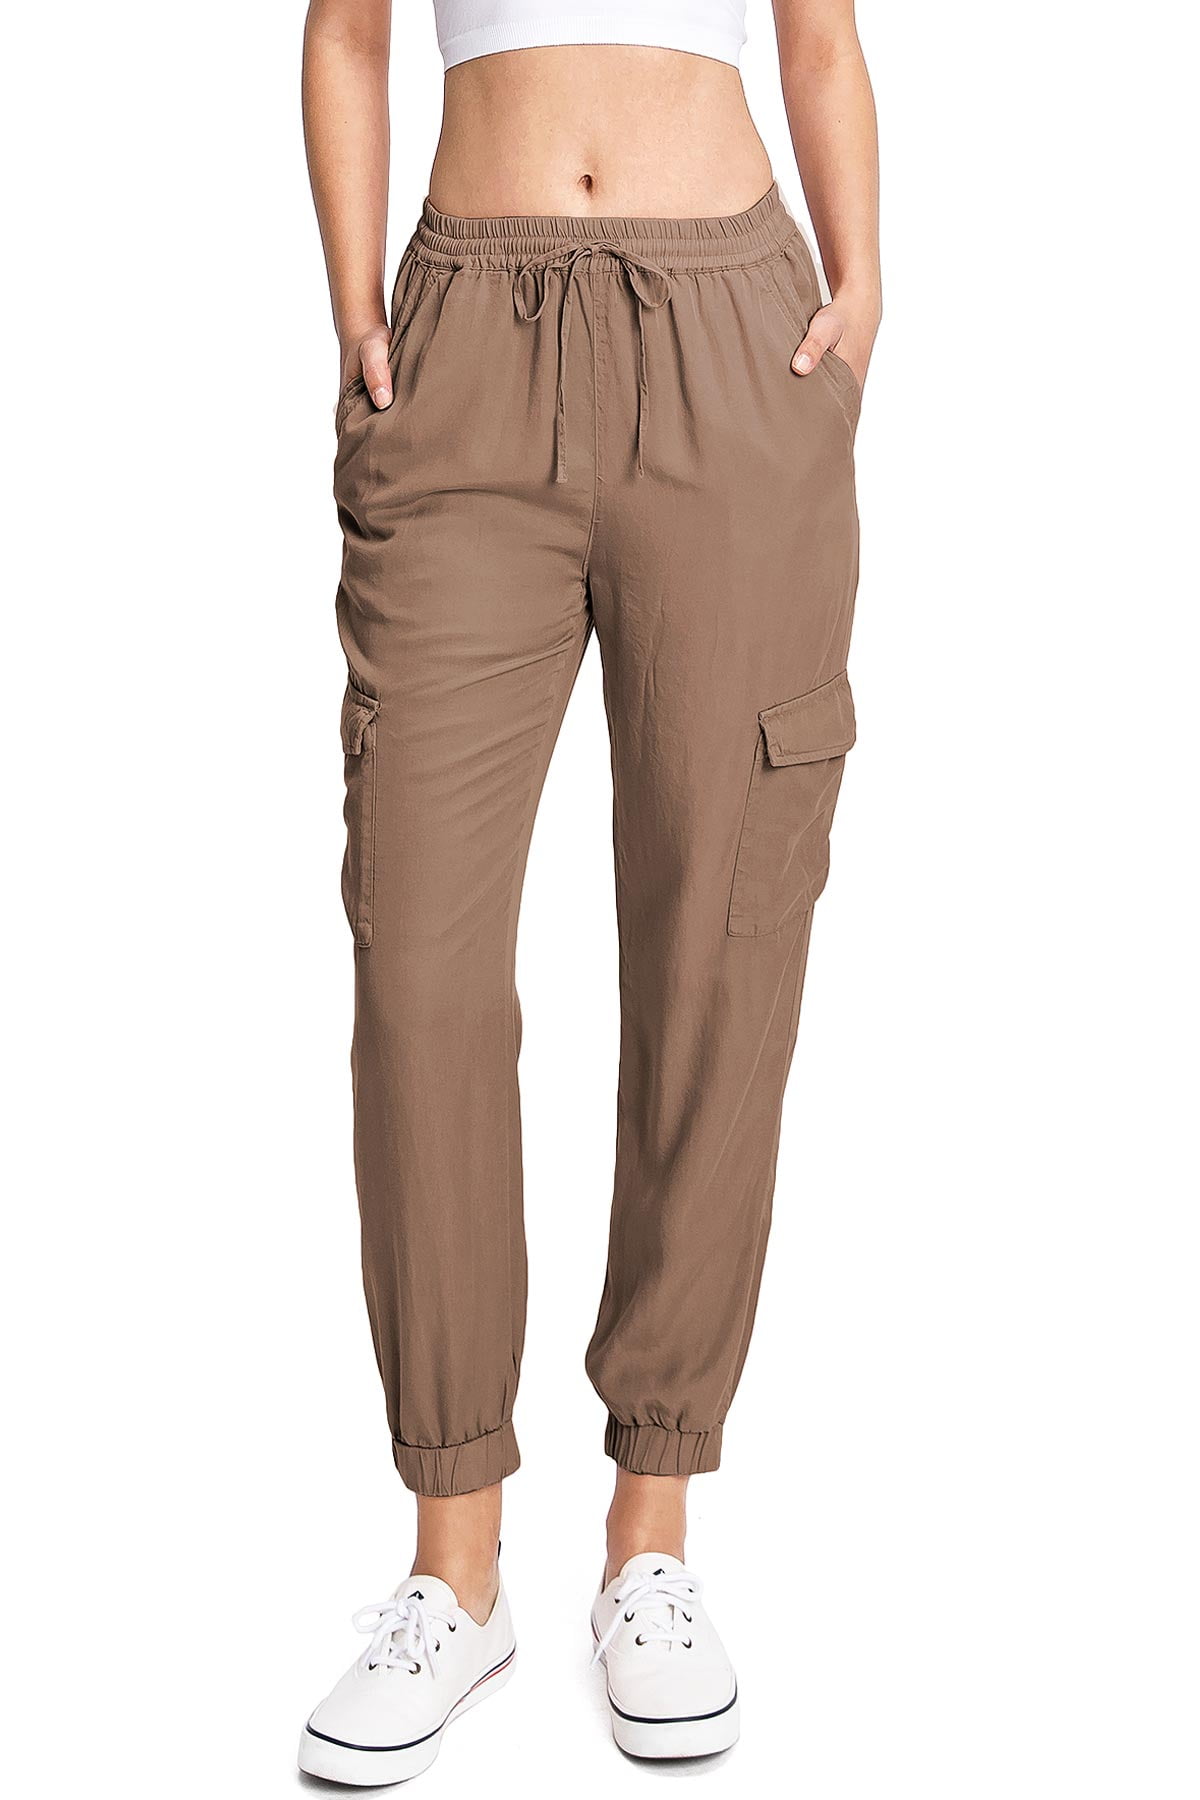 HSMQHJWE Juniors Sweatpants Womens Plus Size Fit Straight Business Casual  Leg Solid Pant Color Pants Office Women'S Work Suit Pants Long Dress Pants  